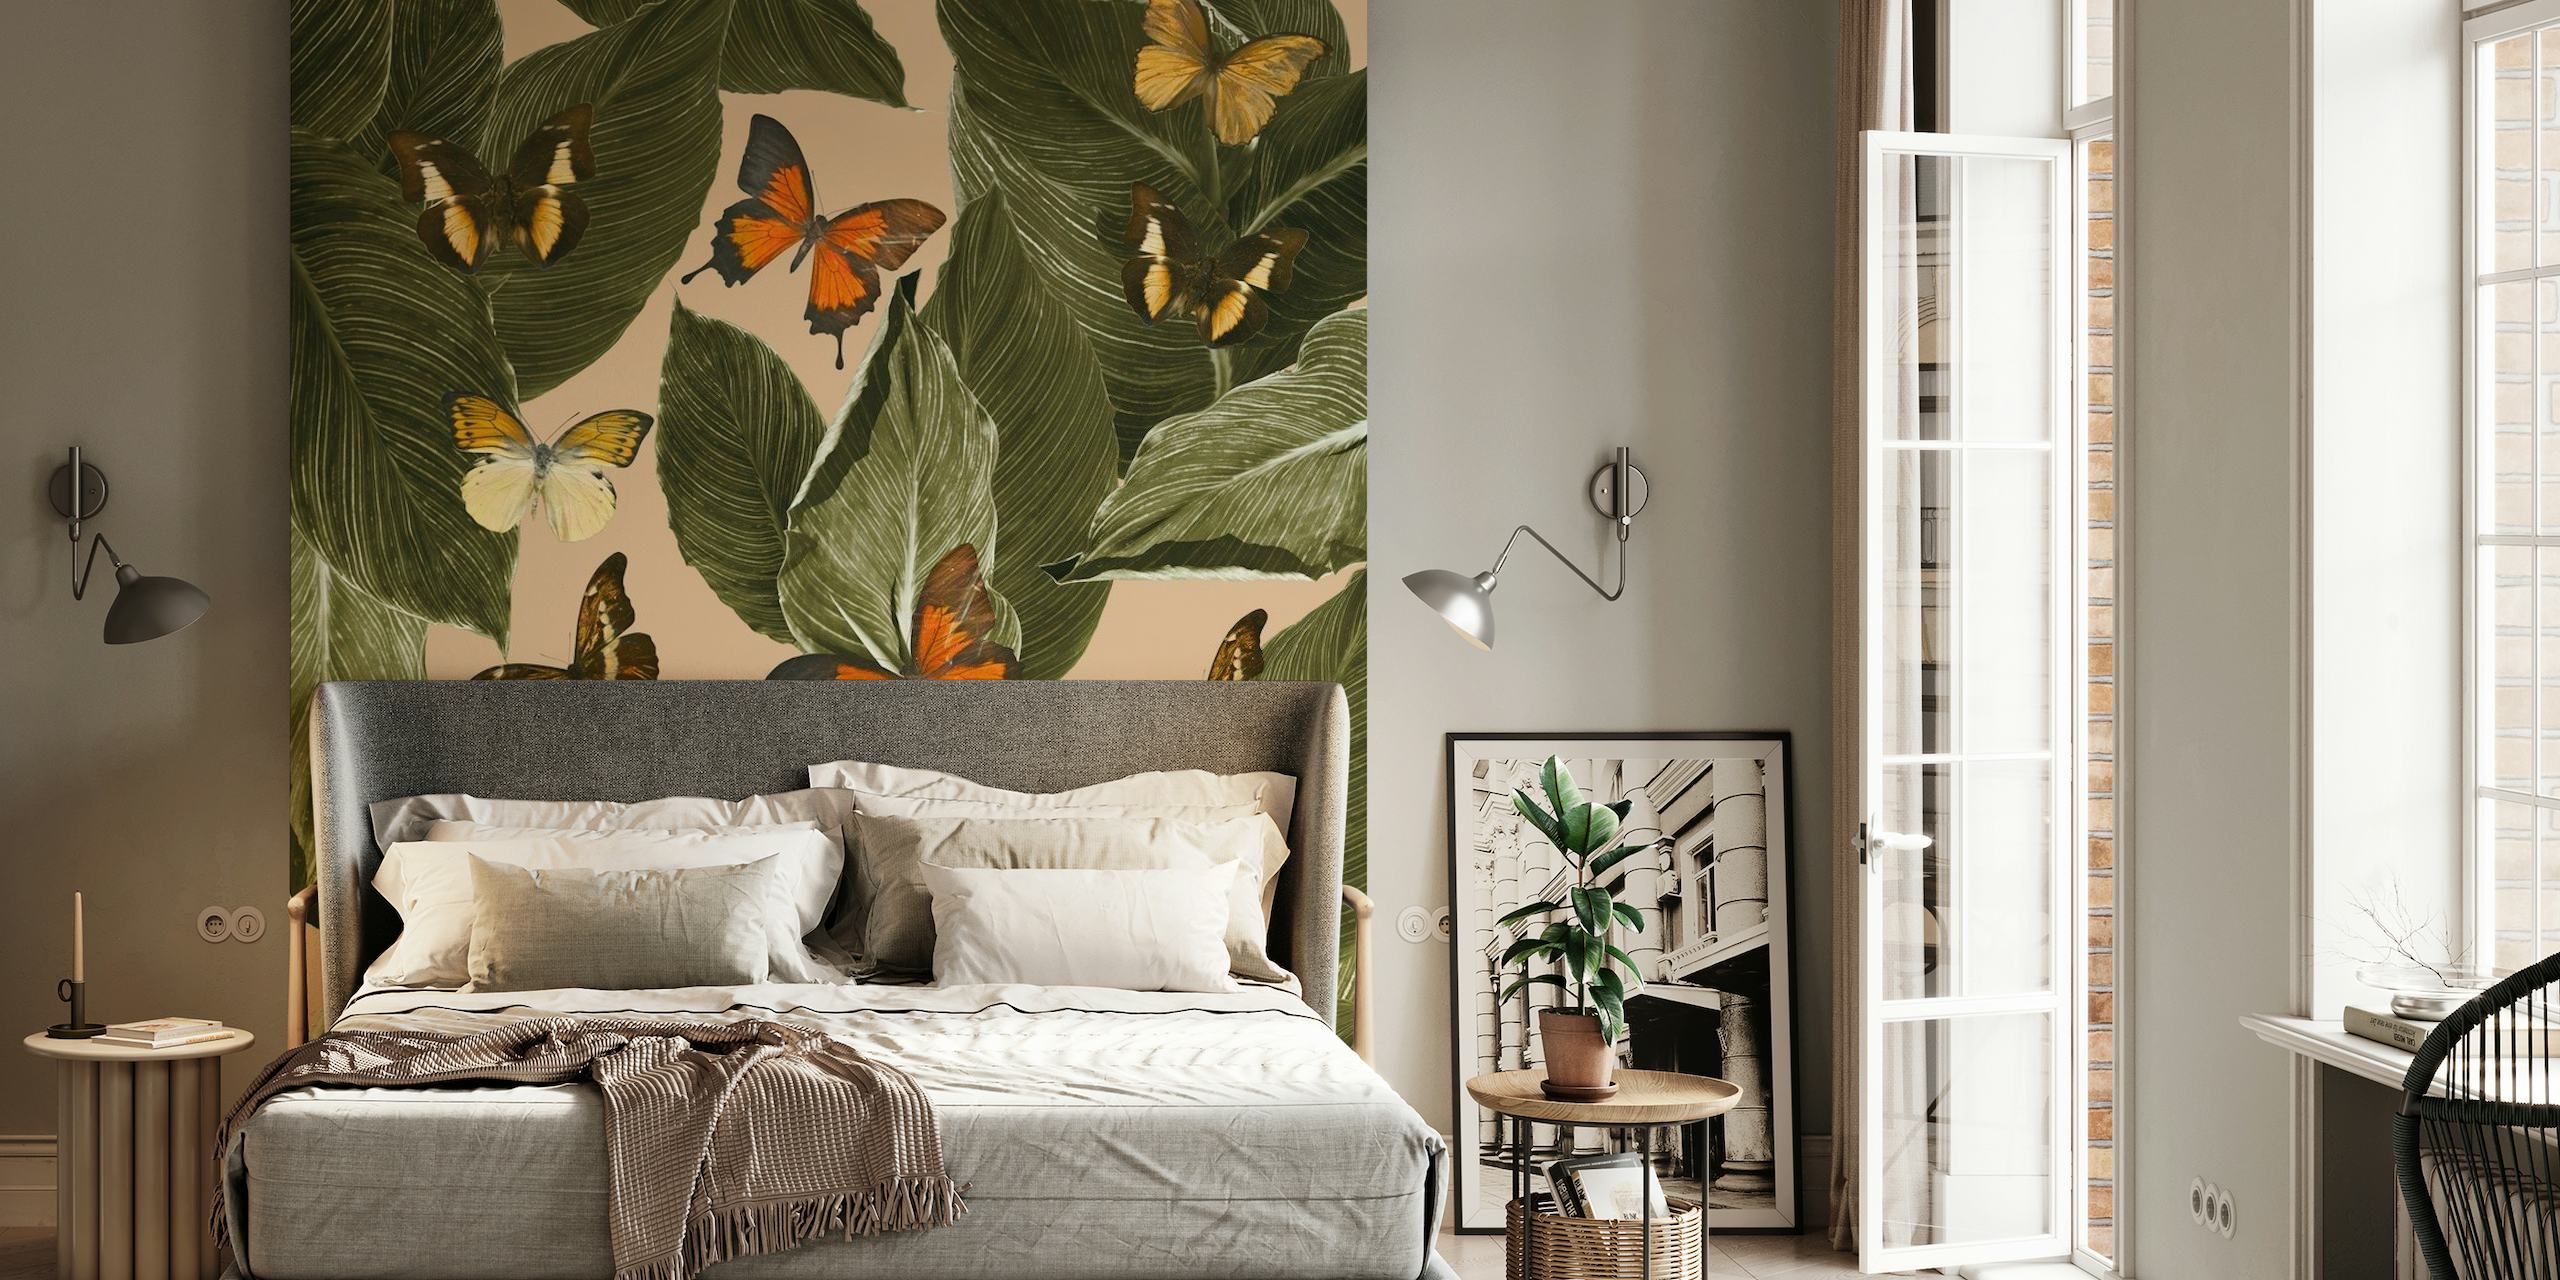 Butterfly Jungle Delight Wandbild mit grünen Blättern und bunten Schmetterlingen auf einem warm getönten Hintergrund